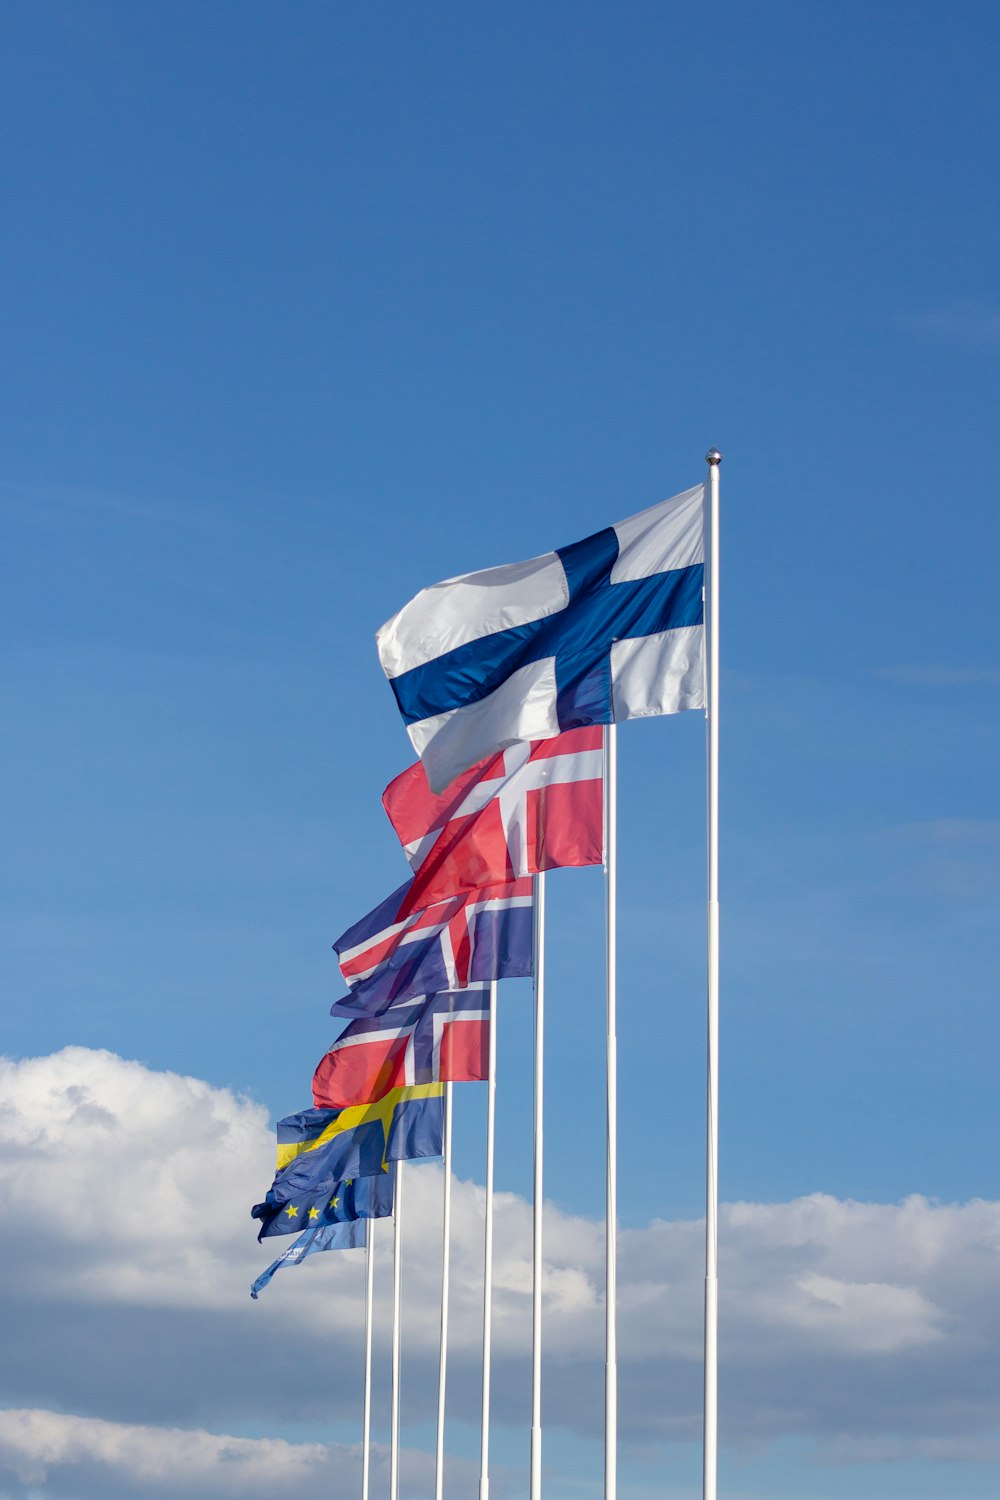 bandiera a strisce bianche, rosse e blu sotto il cielo blu durante il giorno